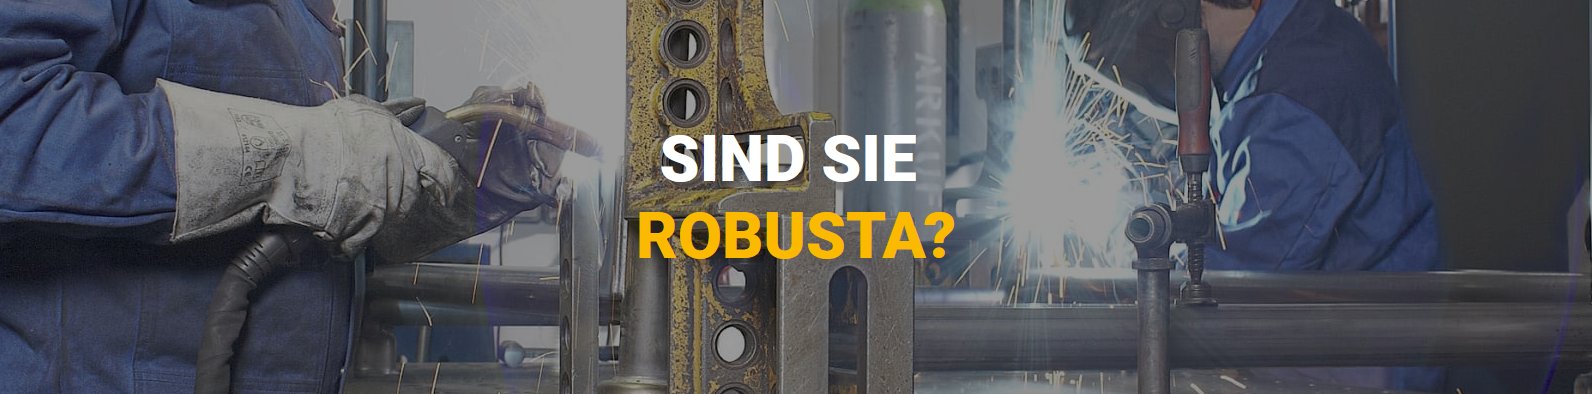 ROBUSTA-GAUKEL GmbH & Co. KG